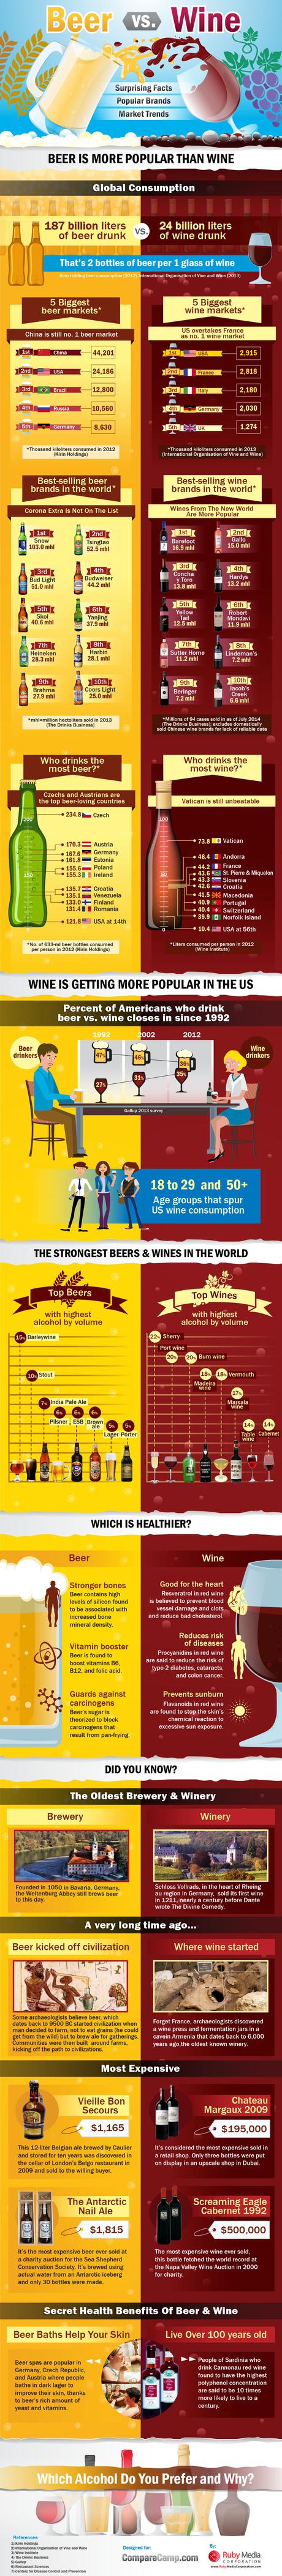 Cerveza Vs. Vino: ¿Cuál es mejor? #Infografía #Cerveza #Vino #Salud